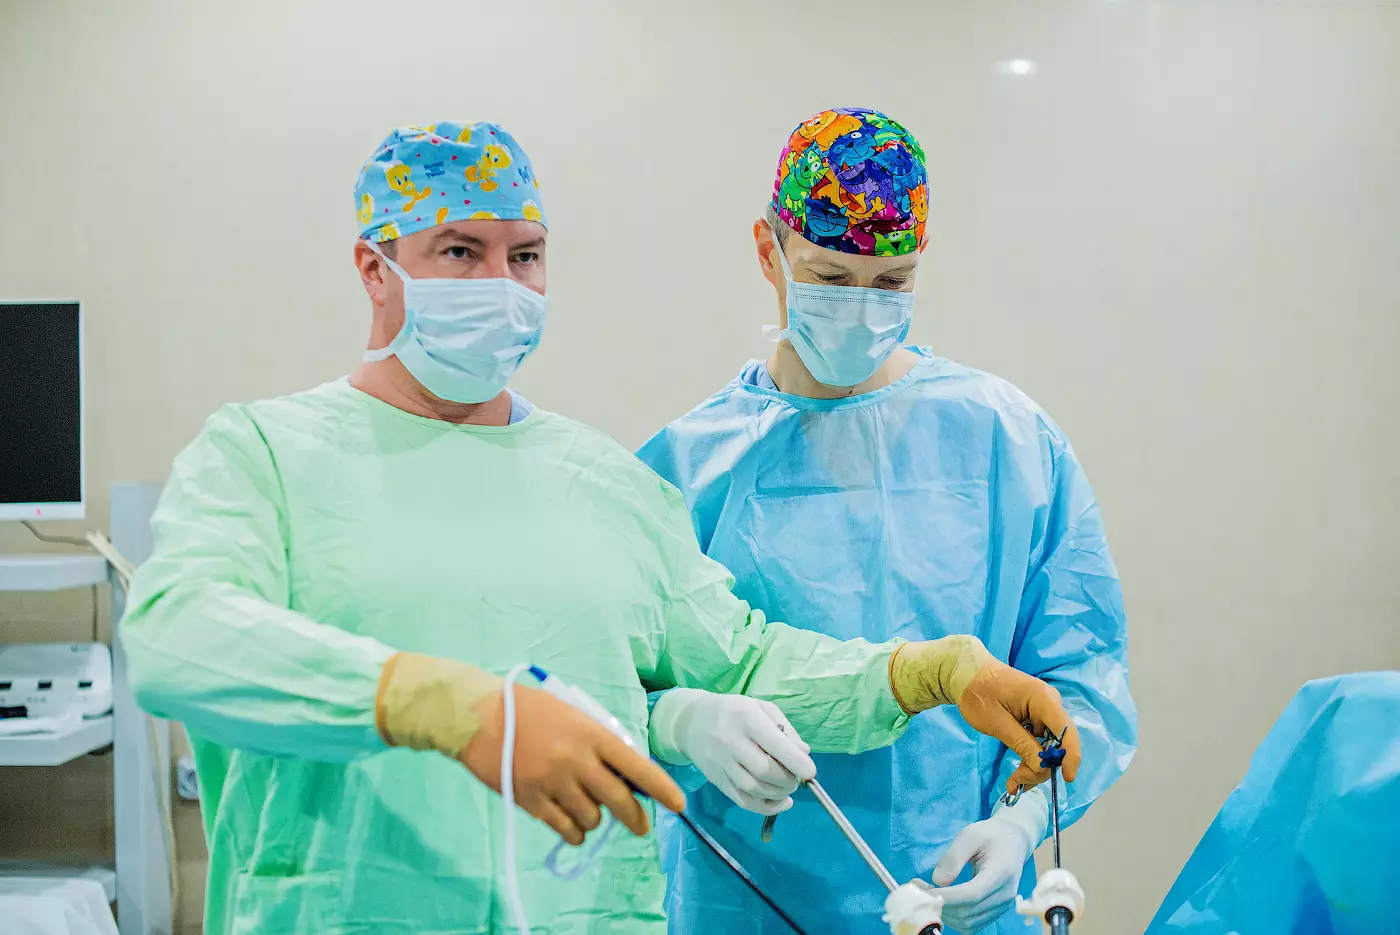 Сучасна відеокамера зсередини передає зображення на екран монітора. Хірурги з максимальною деталізацією бачать всі органи і утворення та з допомогою спеціального обладнання виконують точні маніпуляції.